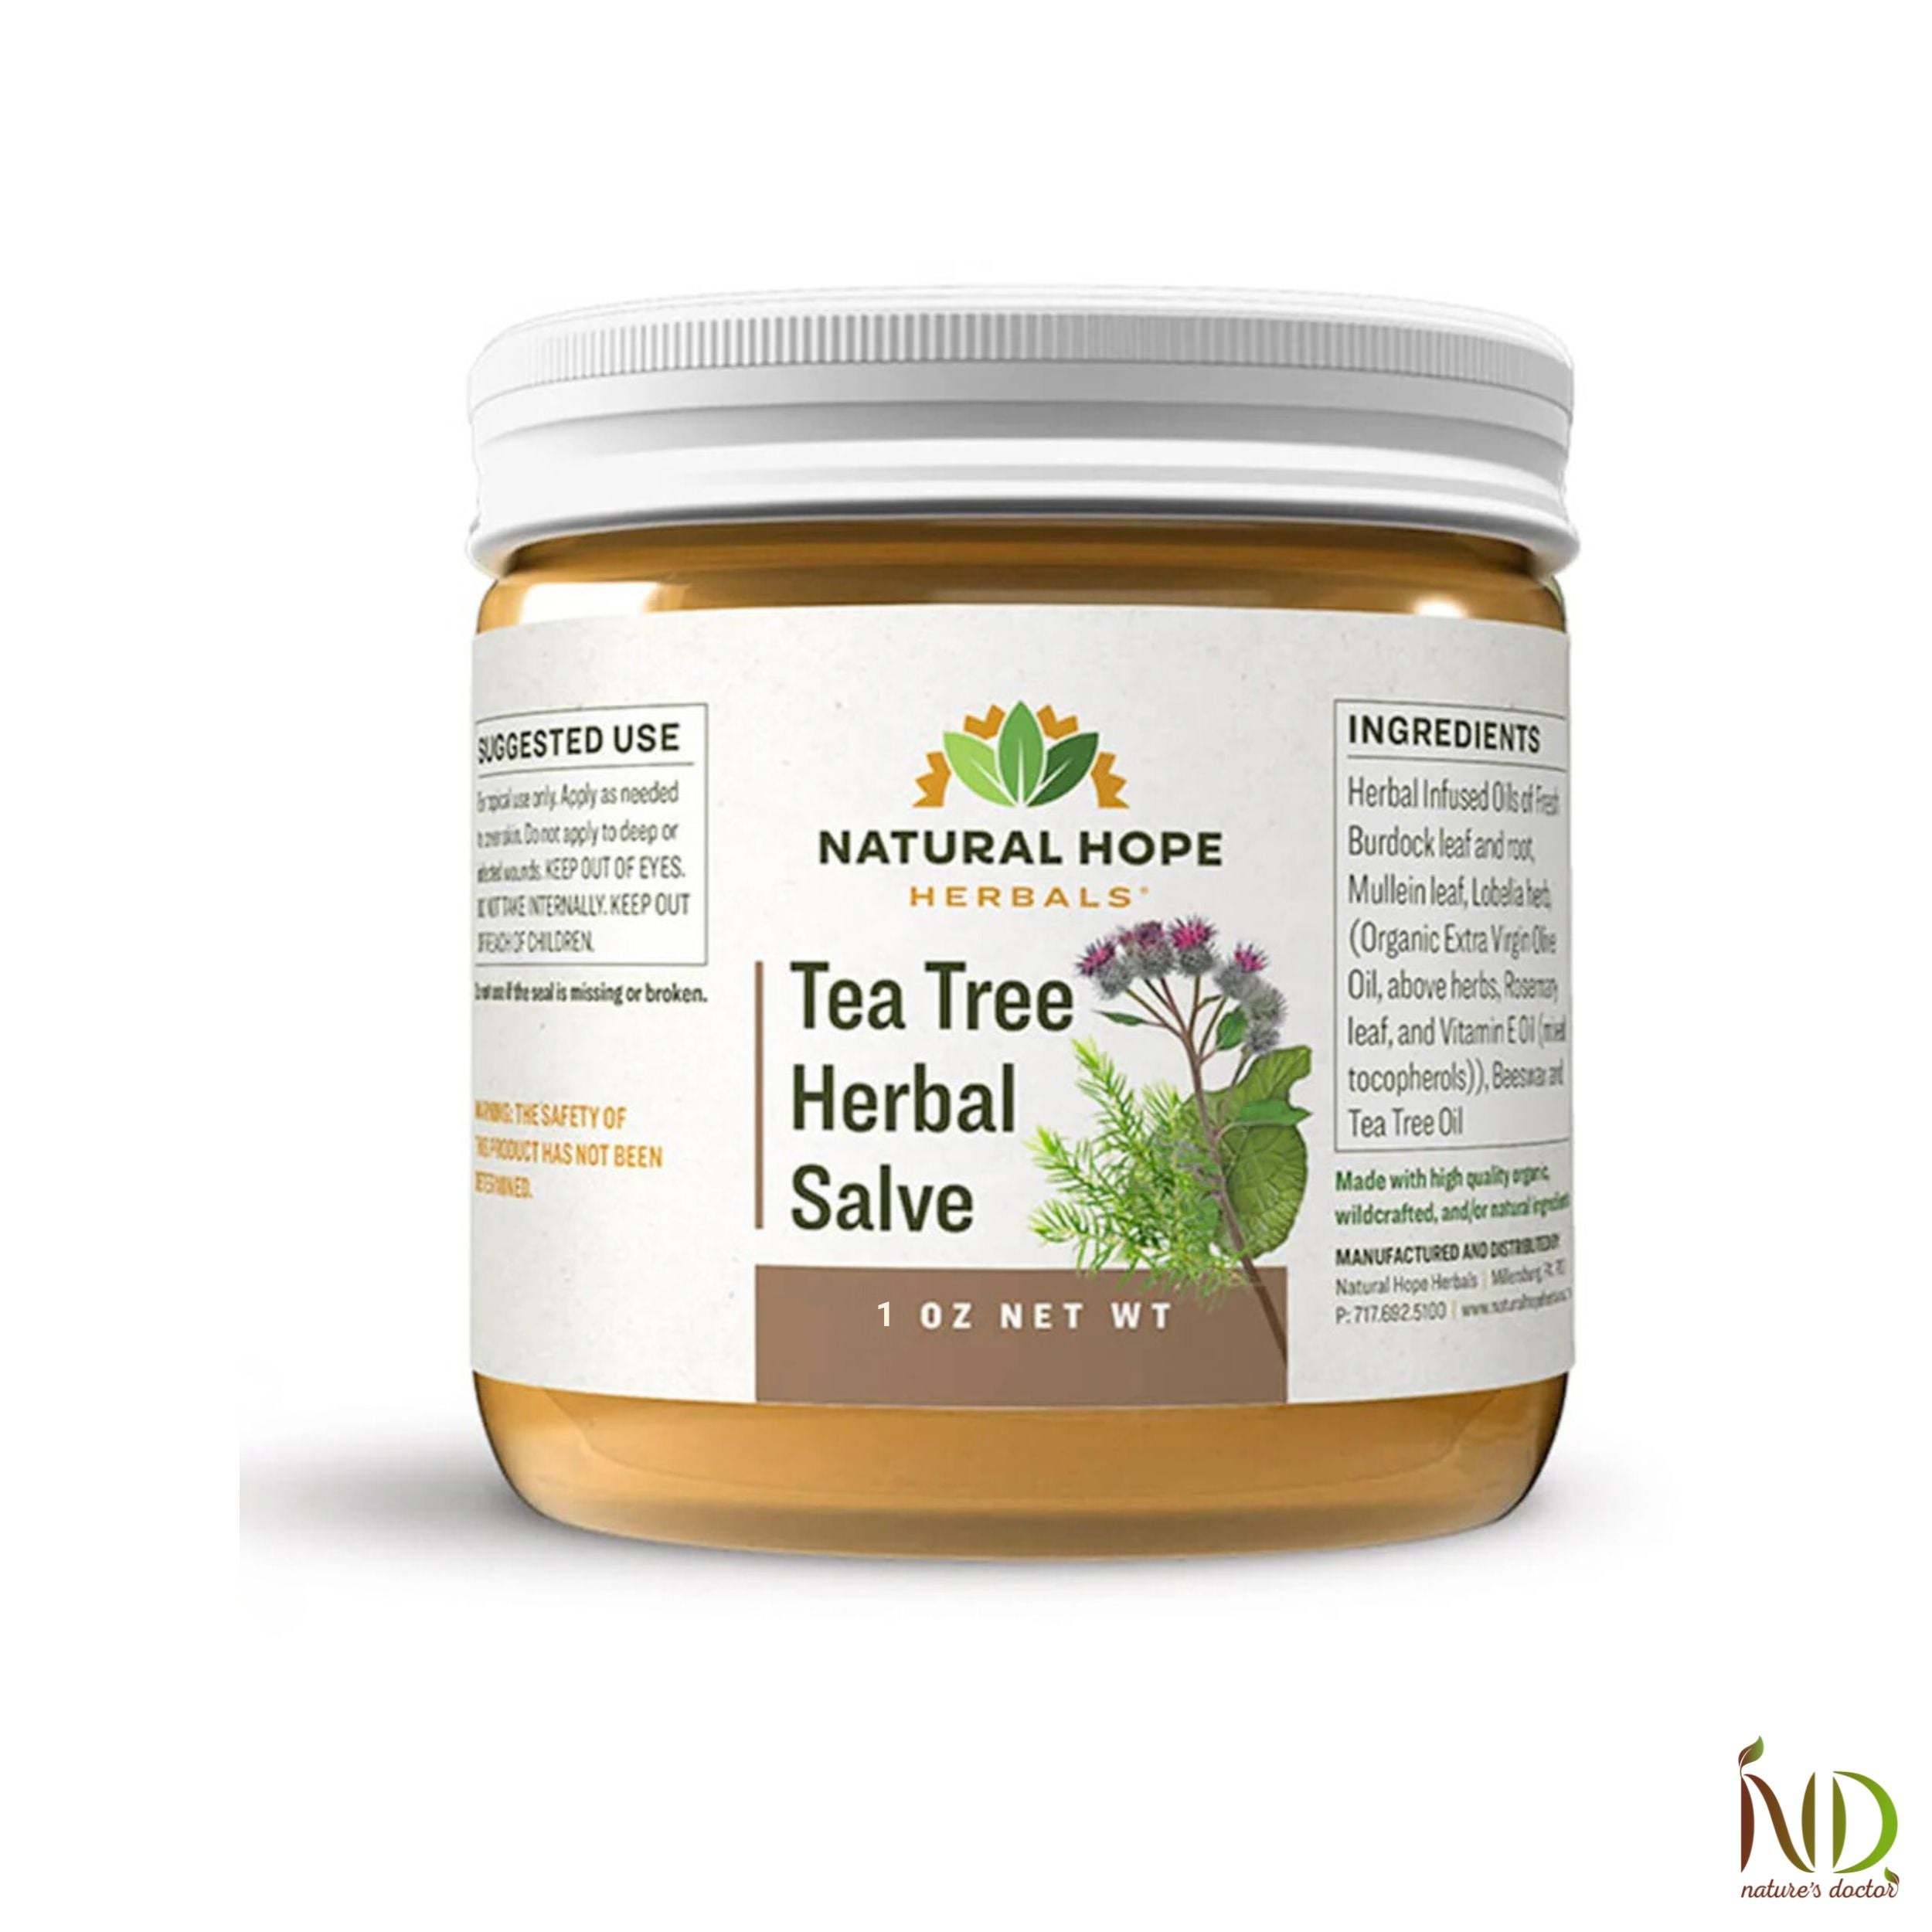 Tea Tree Herbal Salve - Natural Hope Herbals